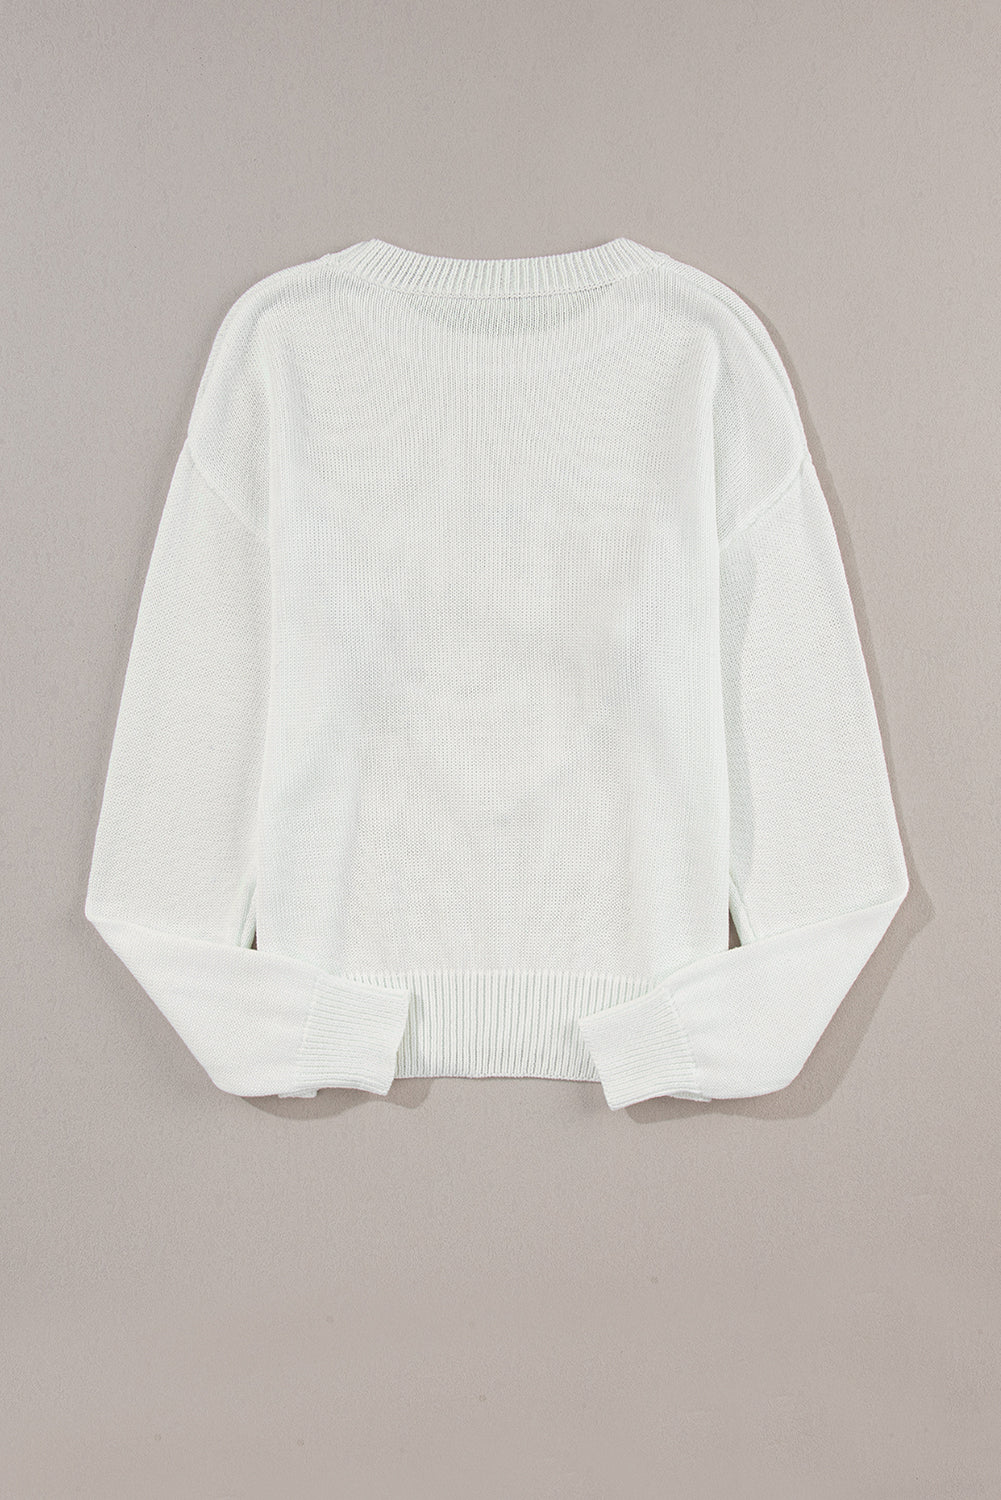 Pleten pulover z belim srčkom in XOXO vzorcem na ramenih